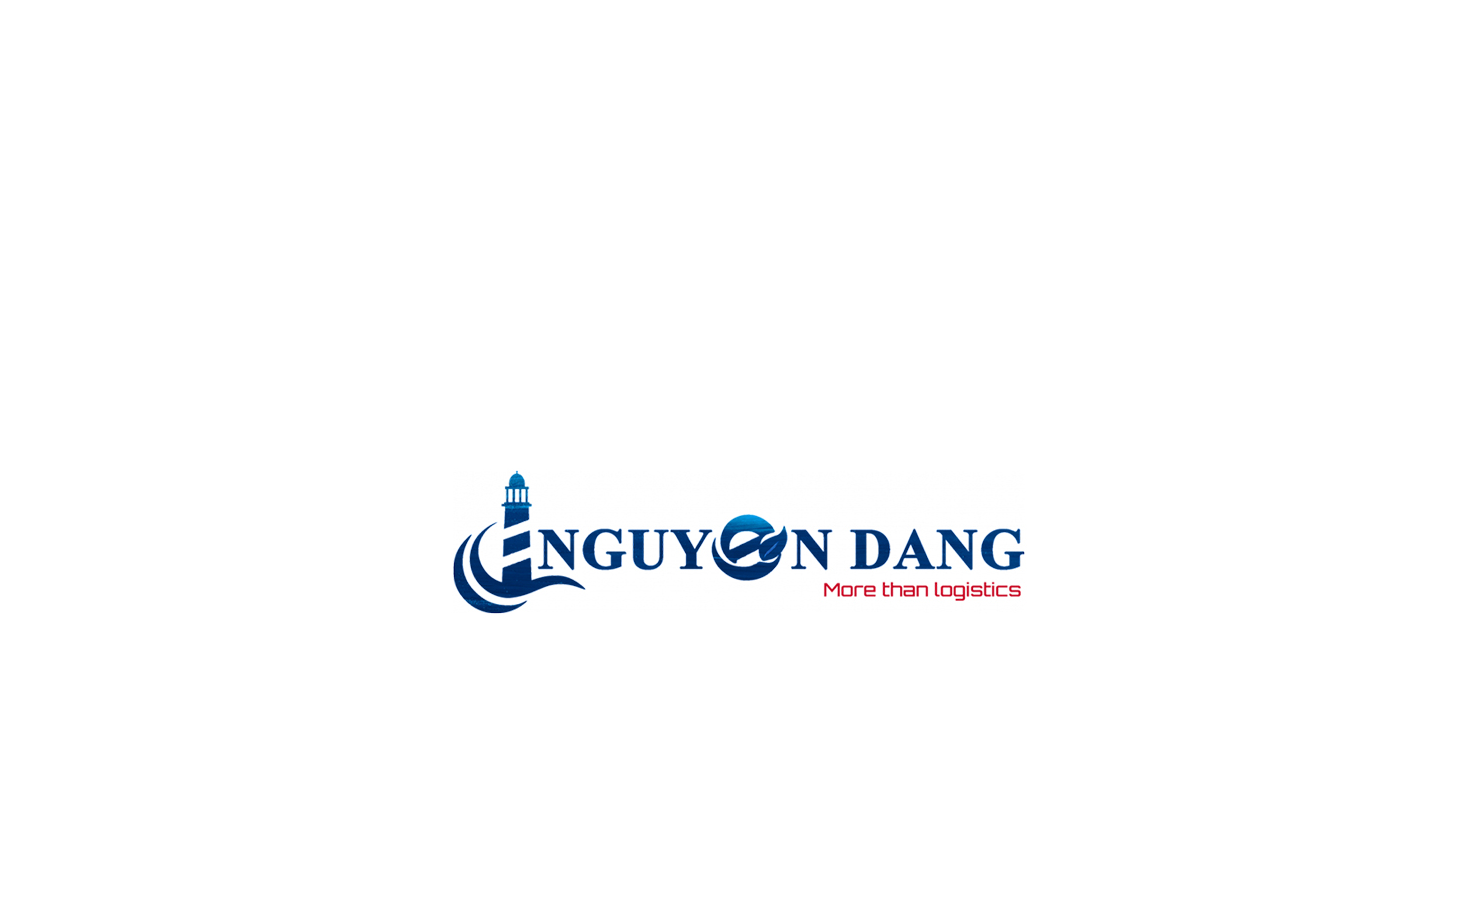  Nguyen Dang Viet Nam Forwarding Co.Ltd